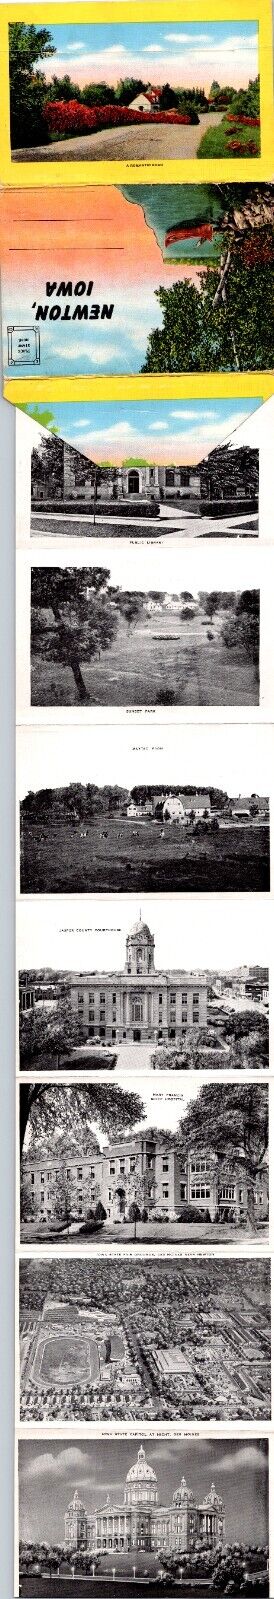 Postcard IA Newton Iowa Town Views Souvenir Folder c1940s 14 Views AE26